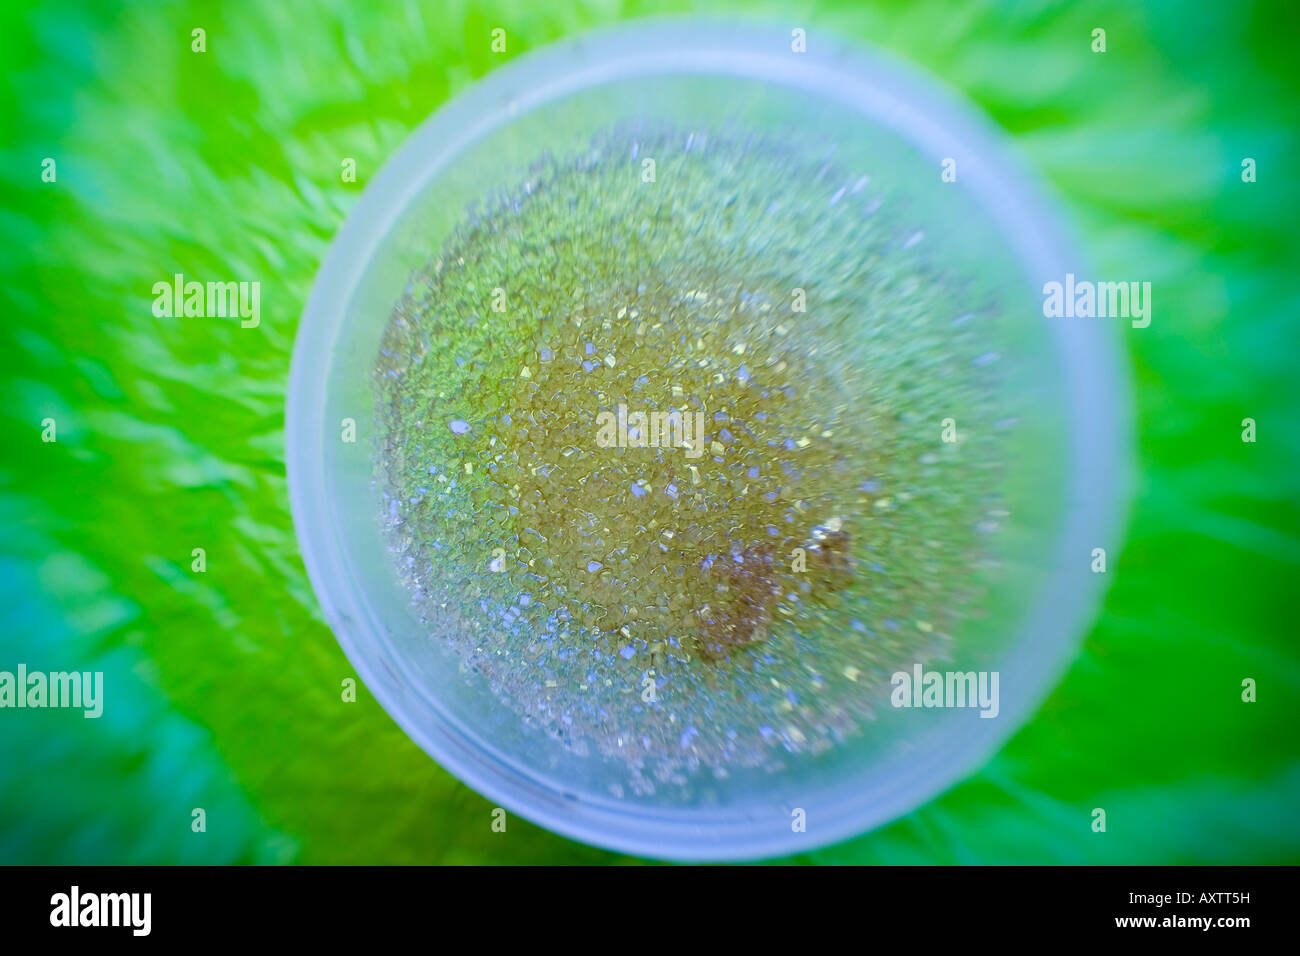 Abstract pattern de cristaux de sucre dans un bol en plastique l'Alaska, United States Banque D'Images